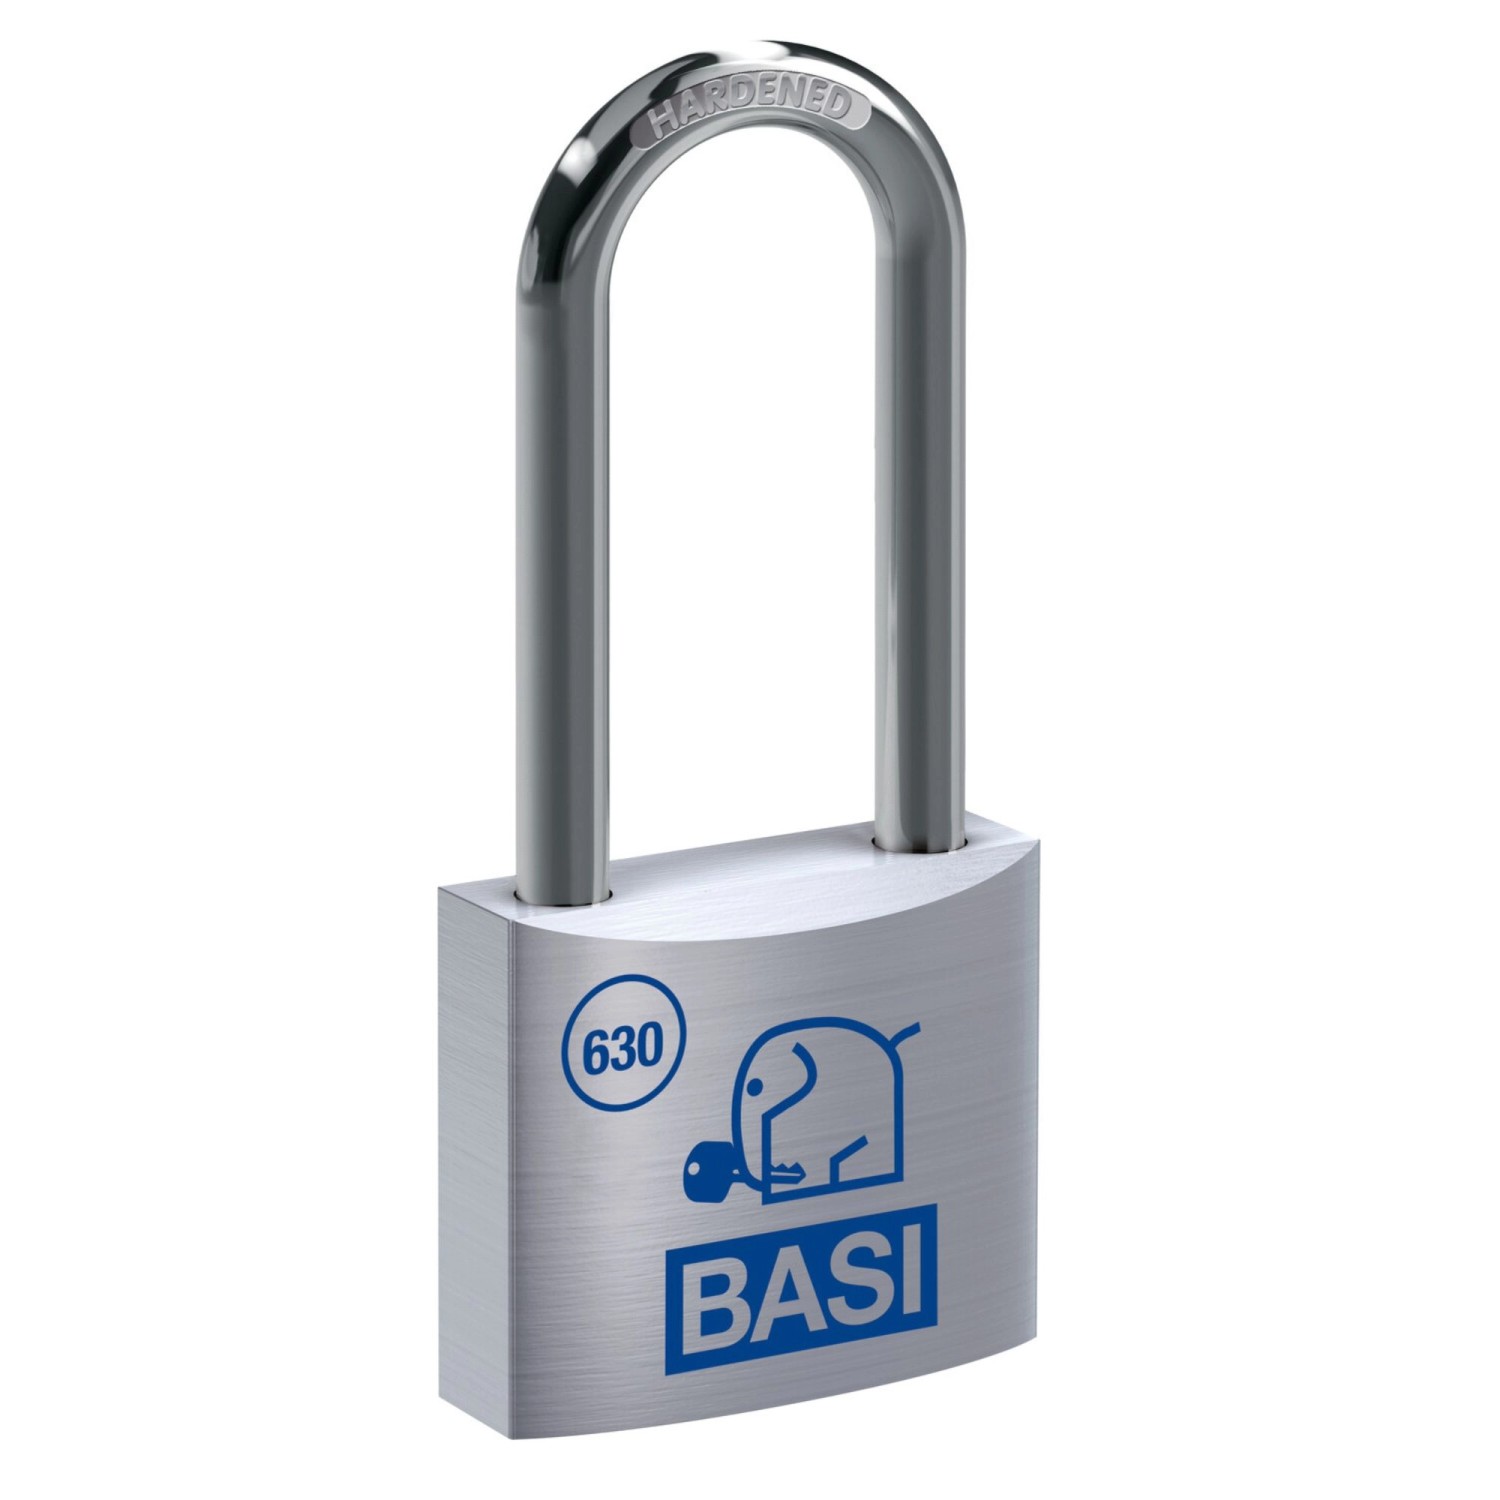 Basi - Vorhangschloss - VHS 630H - 30 mm - Gleichschließend - Bügelhöhe - 63 mm - inkl. 2 Schlüssel - Aluminiumgehäuse